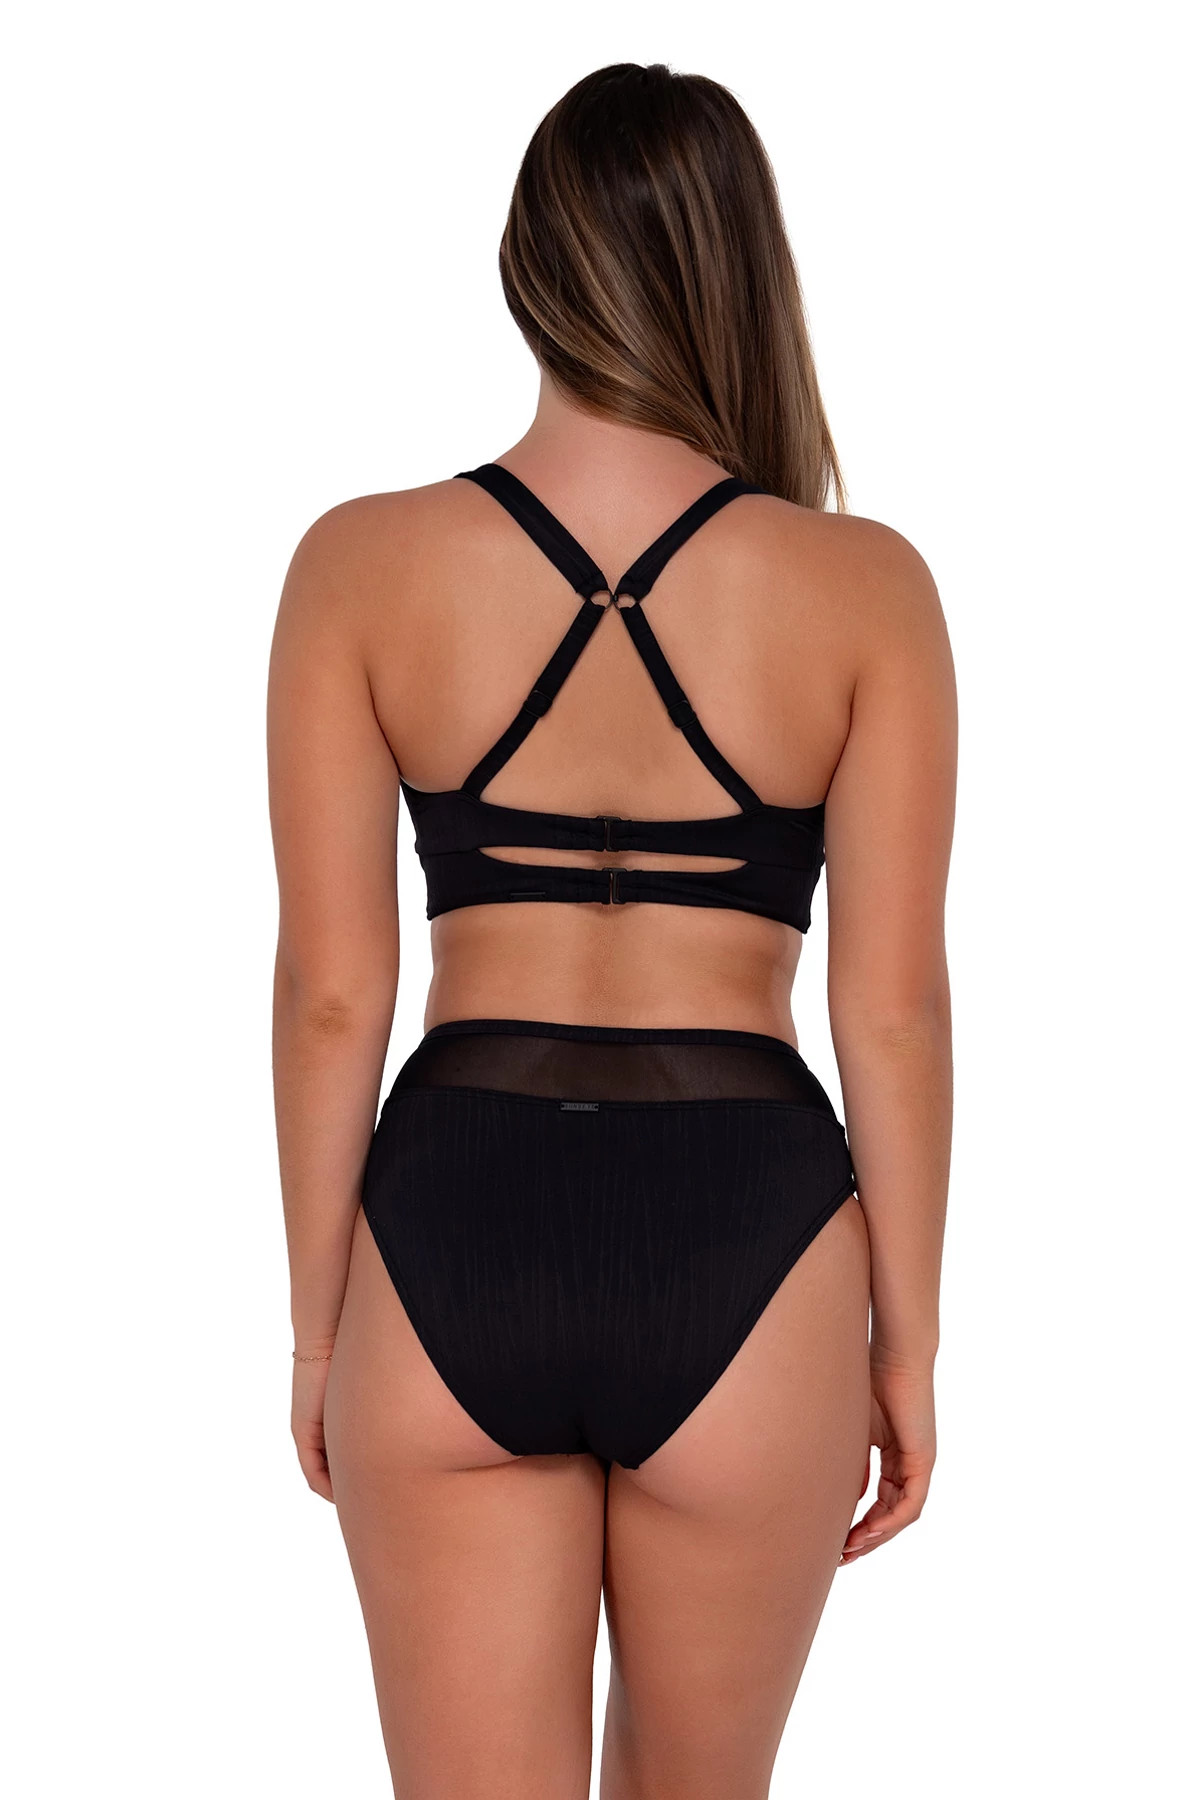 BLACK SEAGRASS TEXTURE Danica Underwire Bikini Top (E-H Cup) image number 2